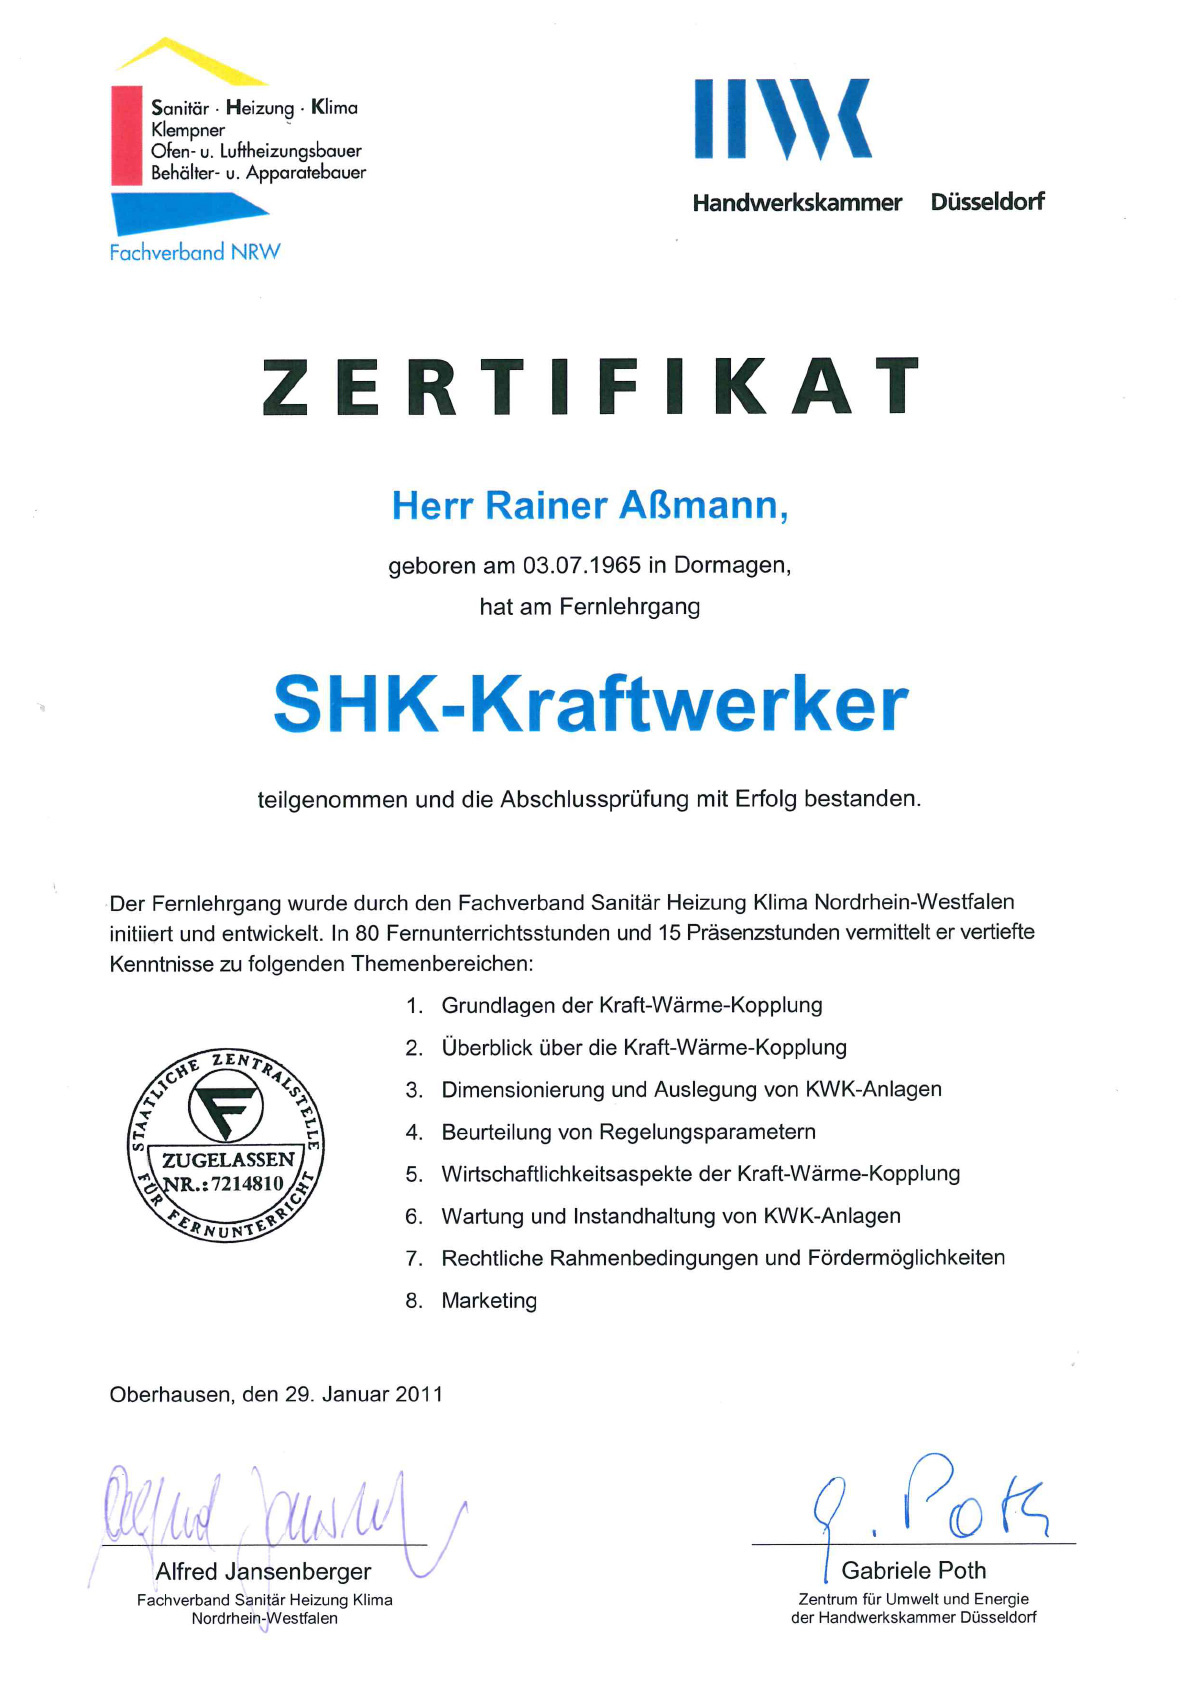 SHK-Kraftwerker (Herr Rainer Aßmann)